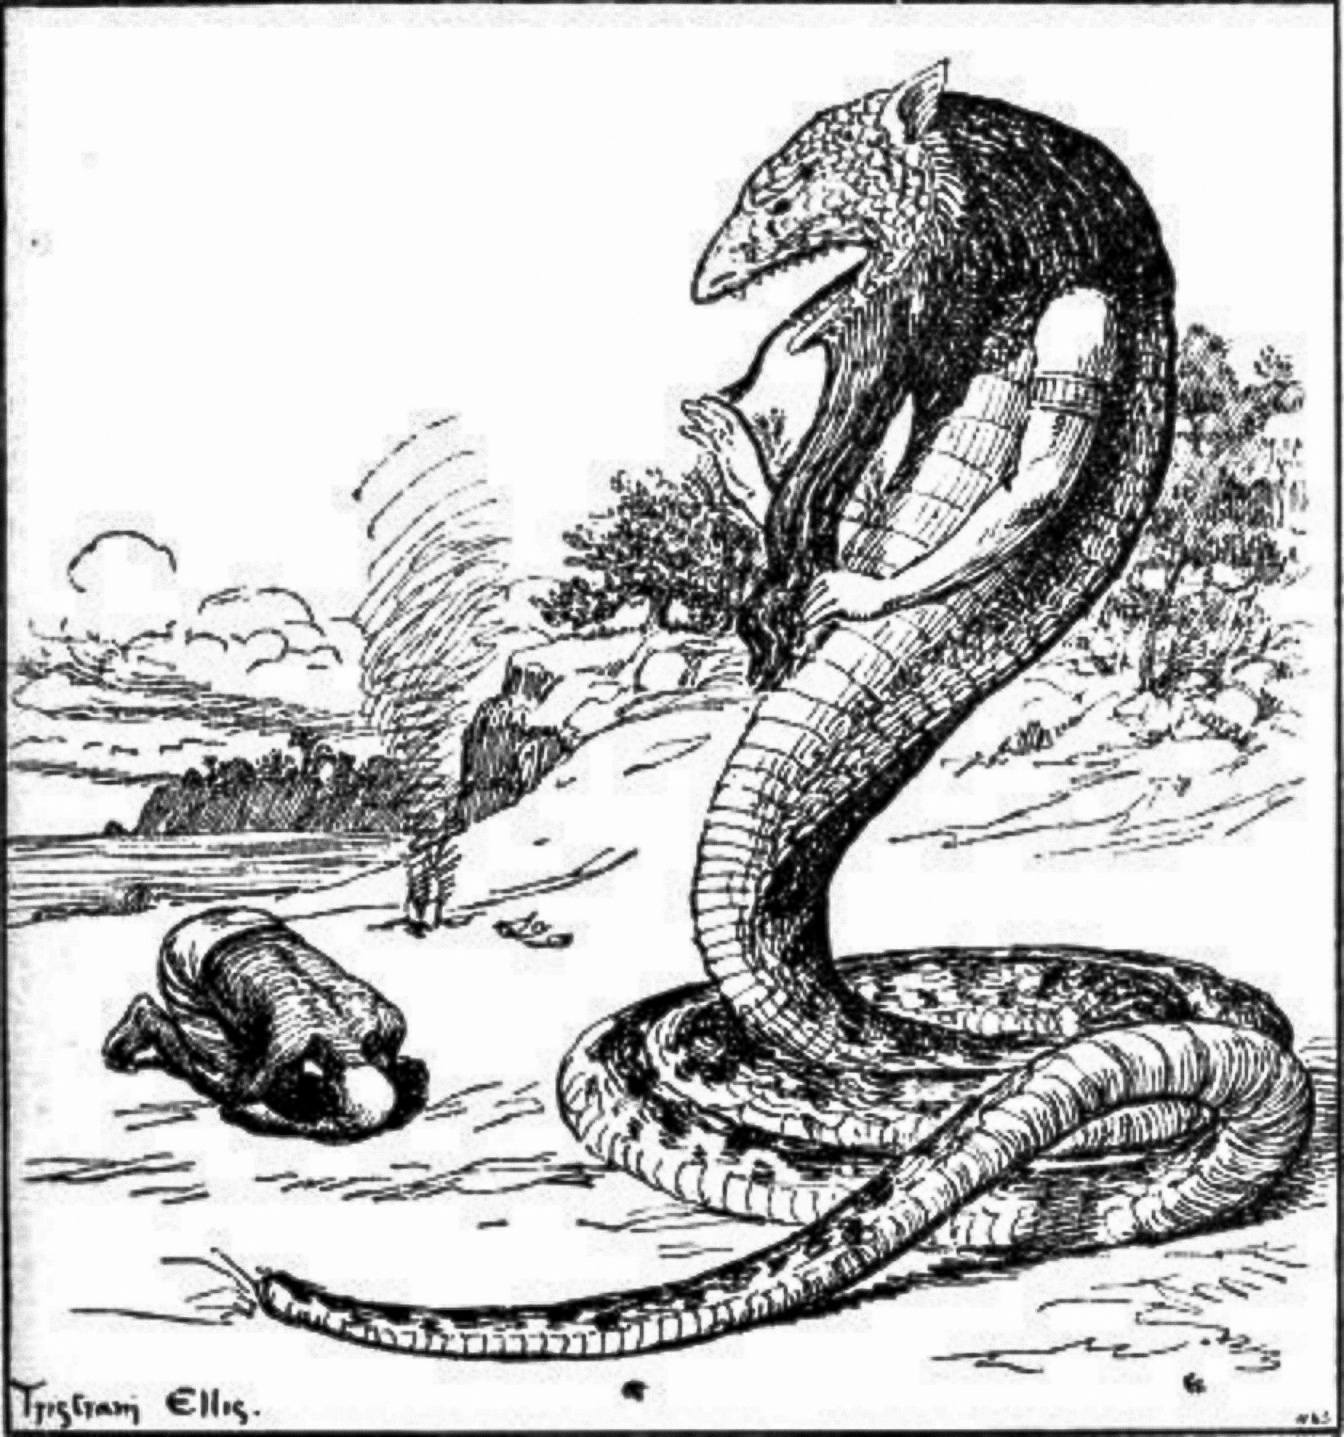 Chúa tể của Punt trong vai một con rắn biết nói khổng lồ.